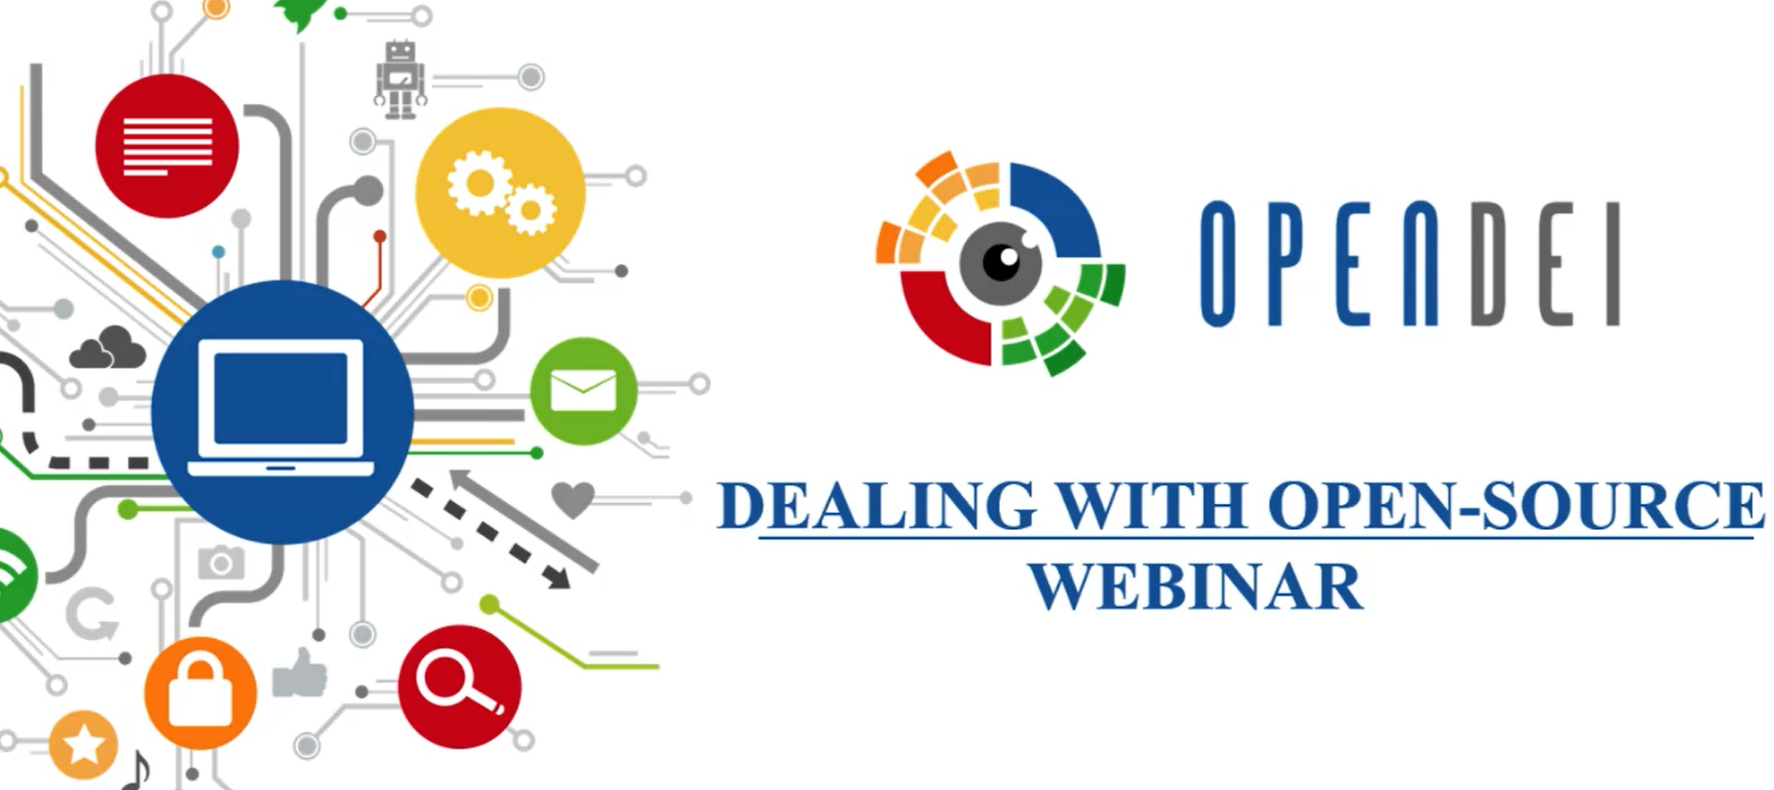 Watch now online the OPEN DEI webinar on Dealing with Open-Source